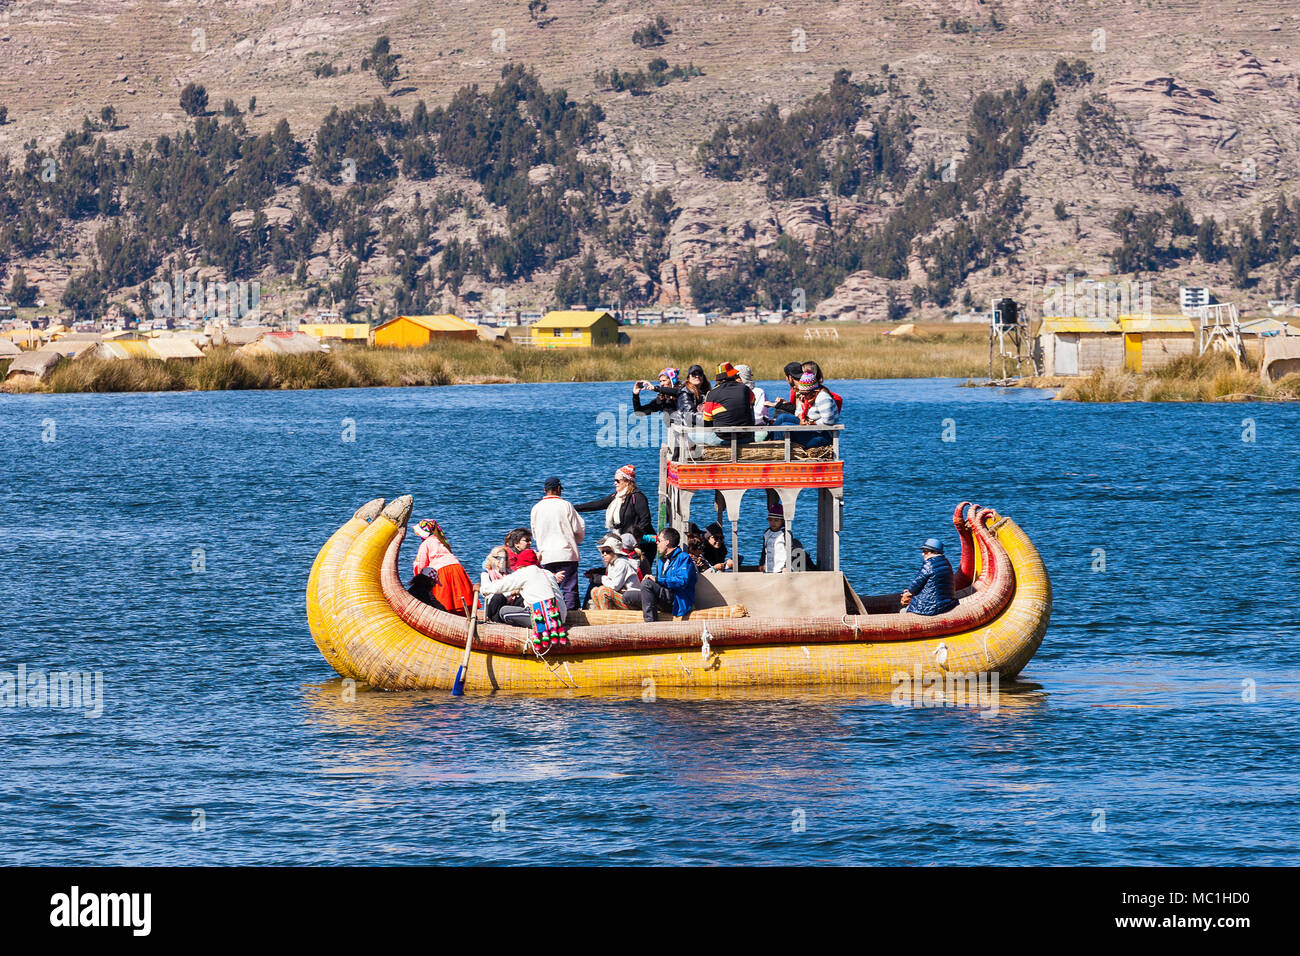 PUNO, PERU - MAY 14, 2015: Unidentified tourists in Totora boat, Titicaca lake near Puno, Peru Stock Photo